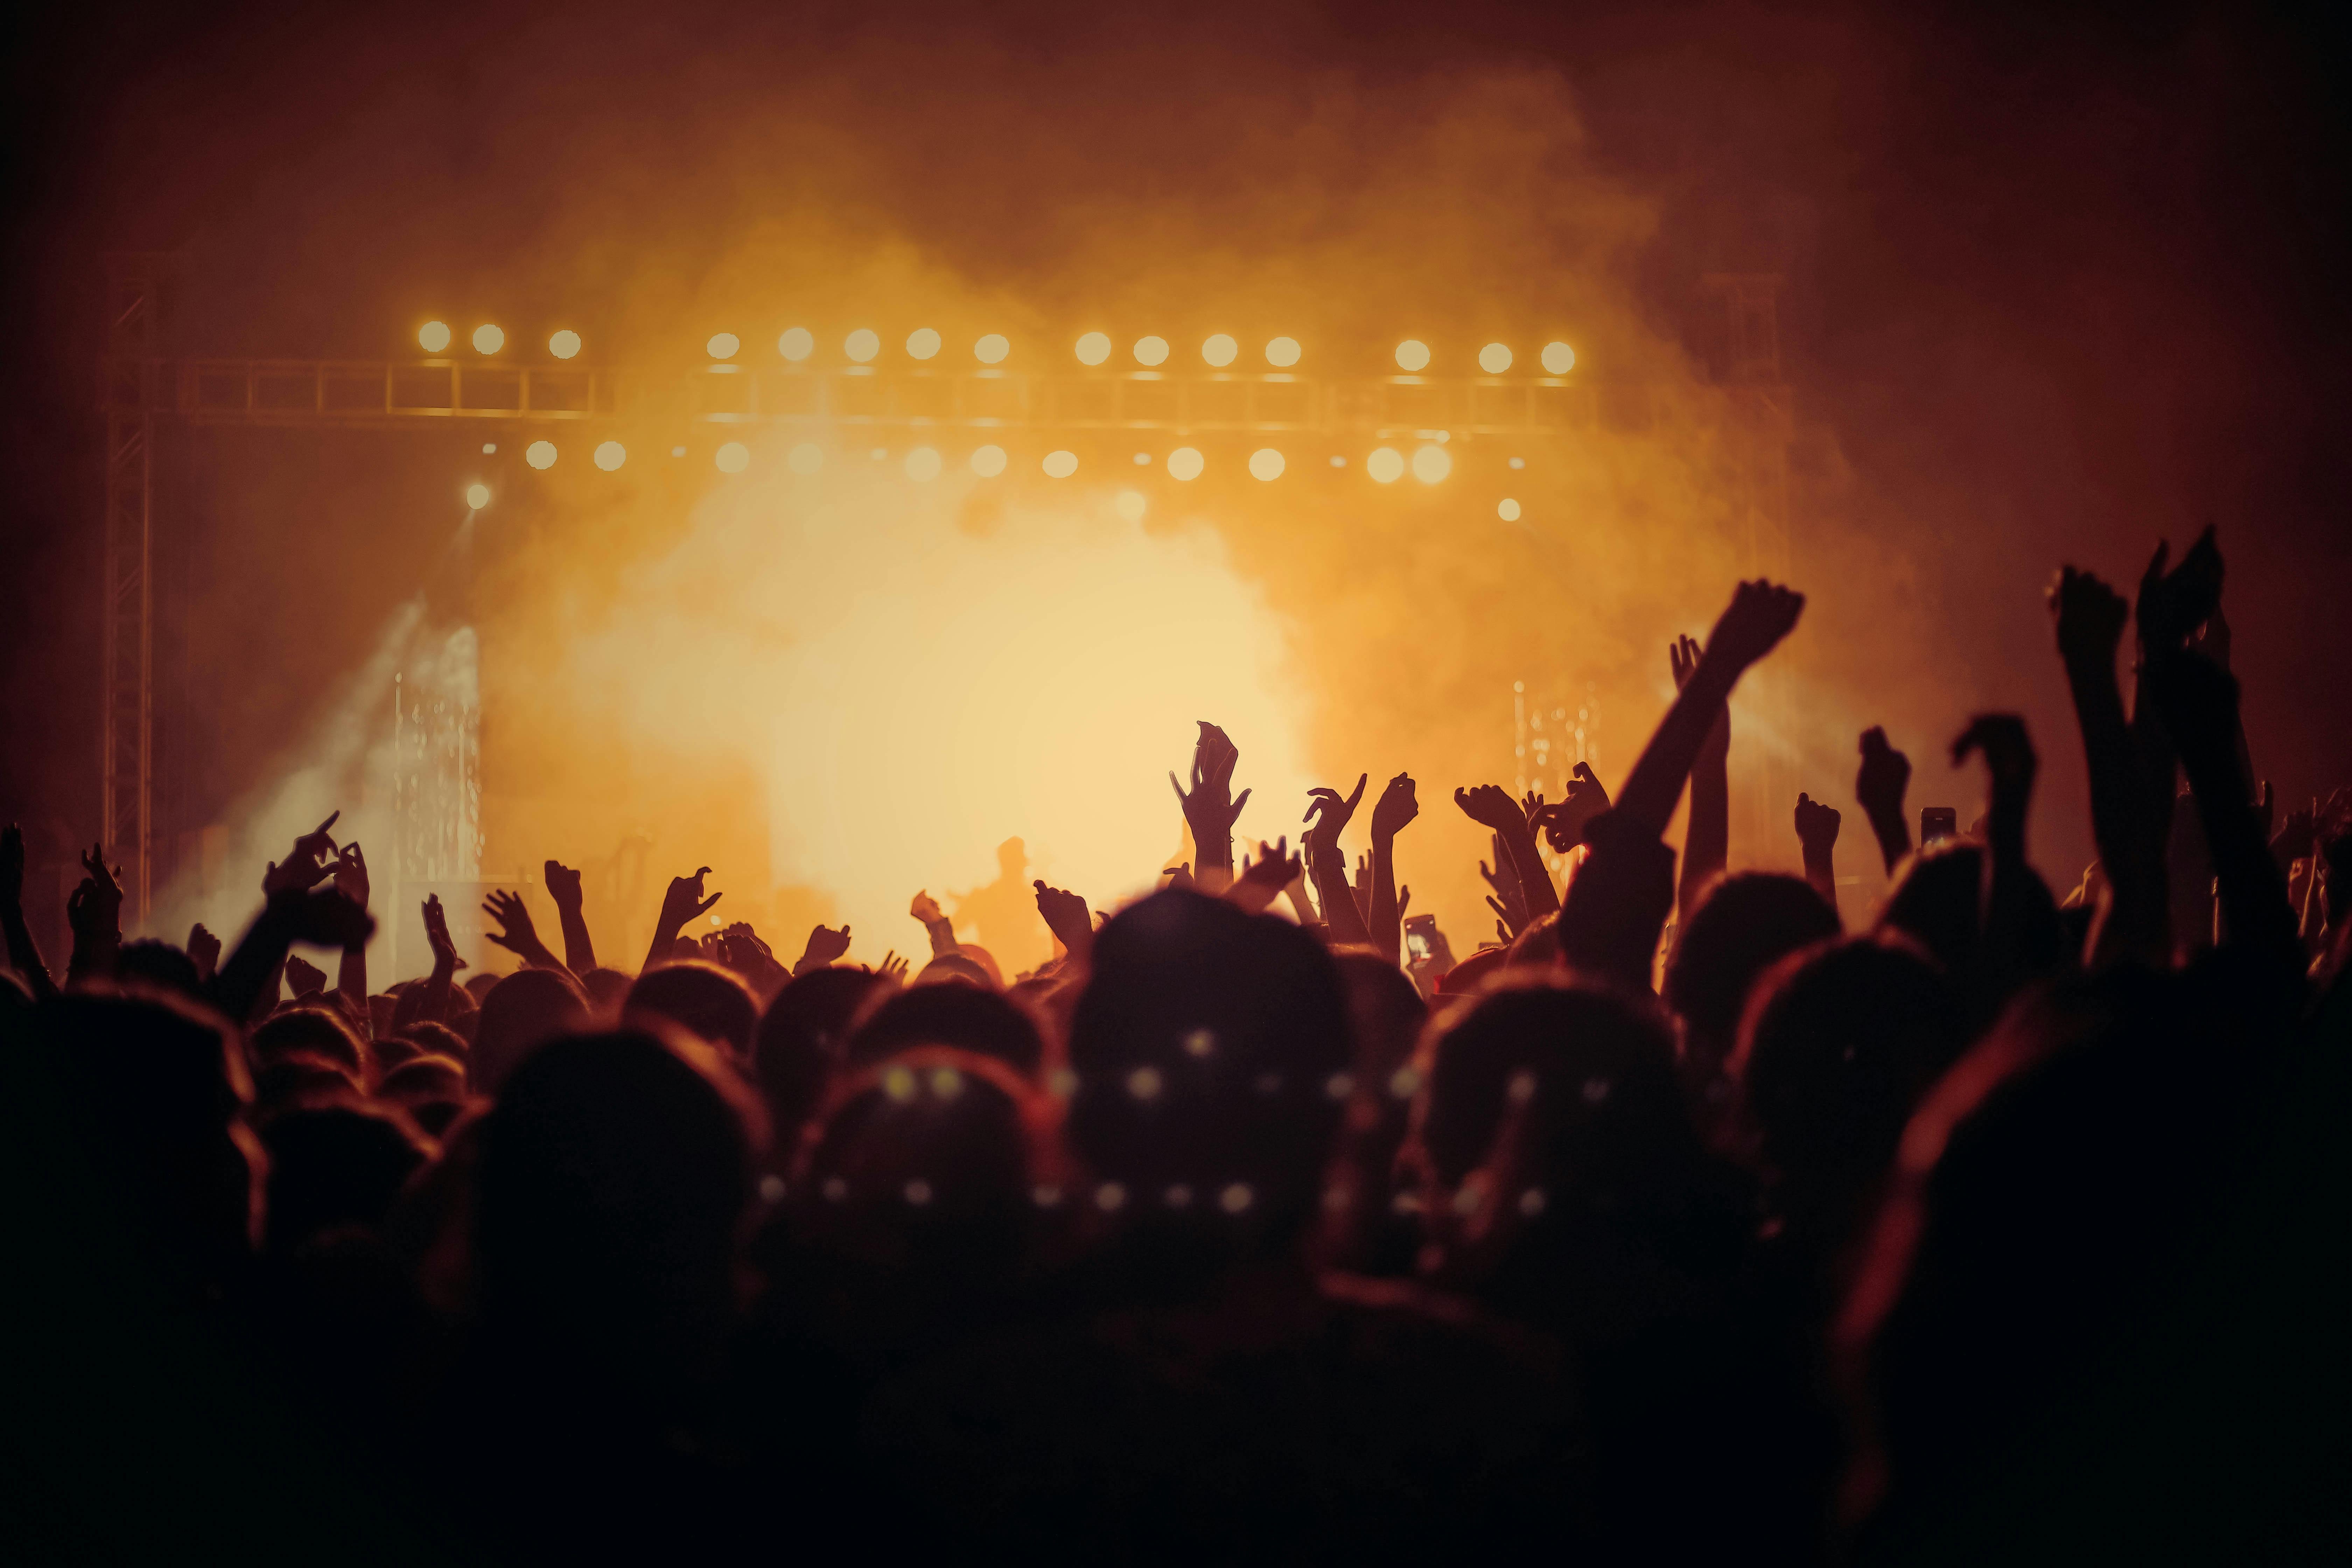 Des fans lors d'un concert | Source : Pexels